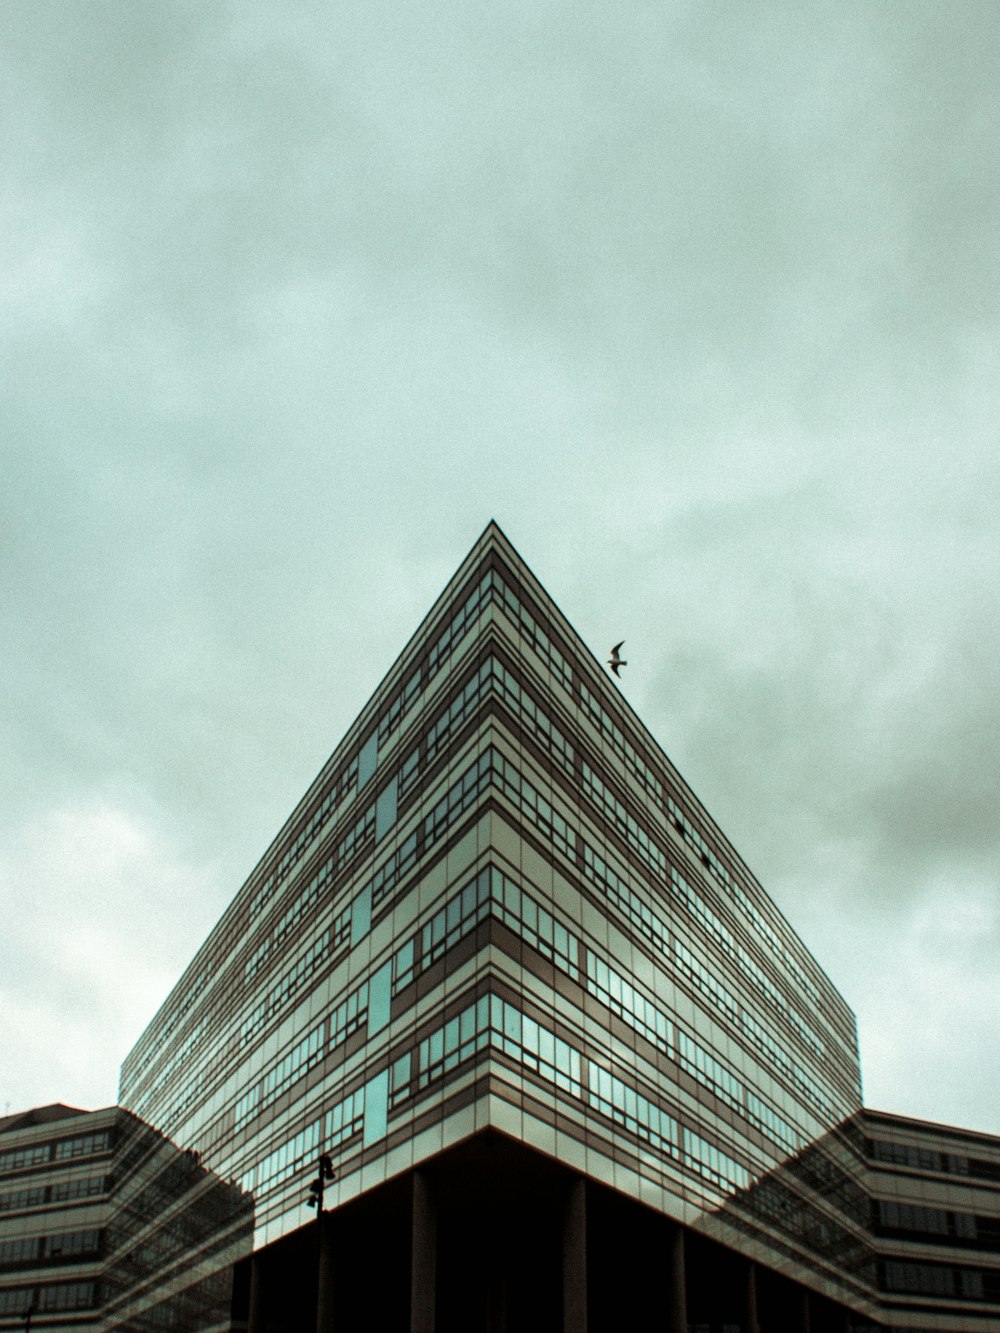 Fotografia de baixo ângulo do edifício sob nuvens Nimbus